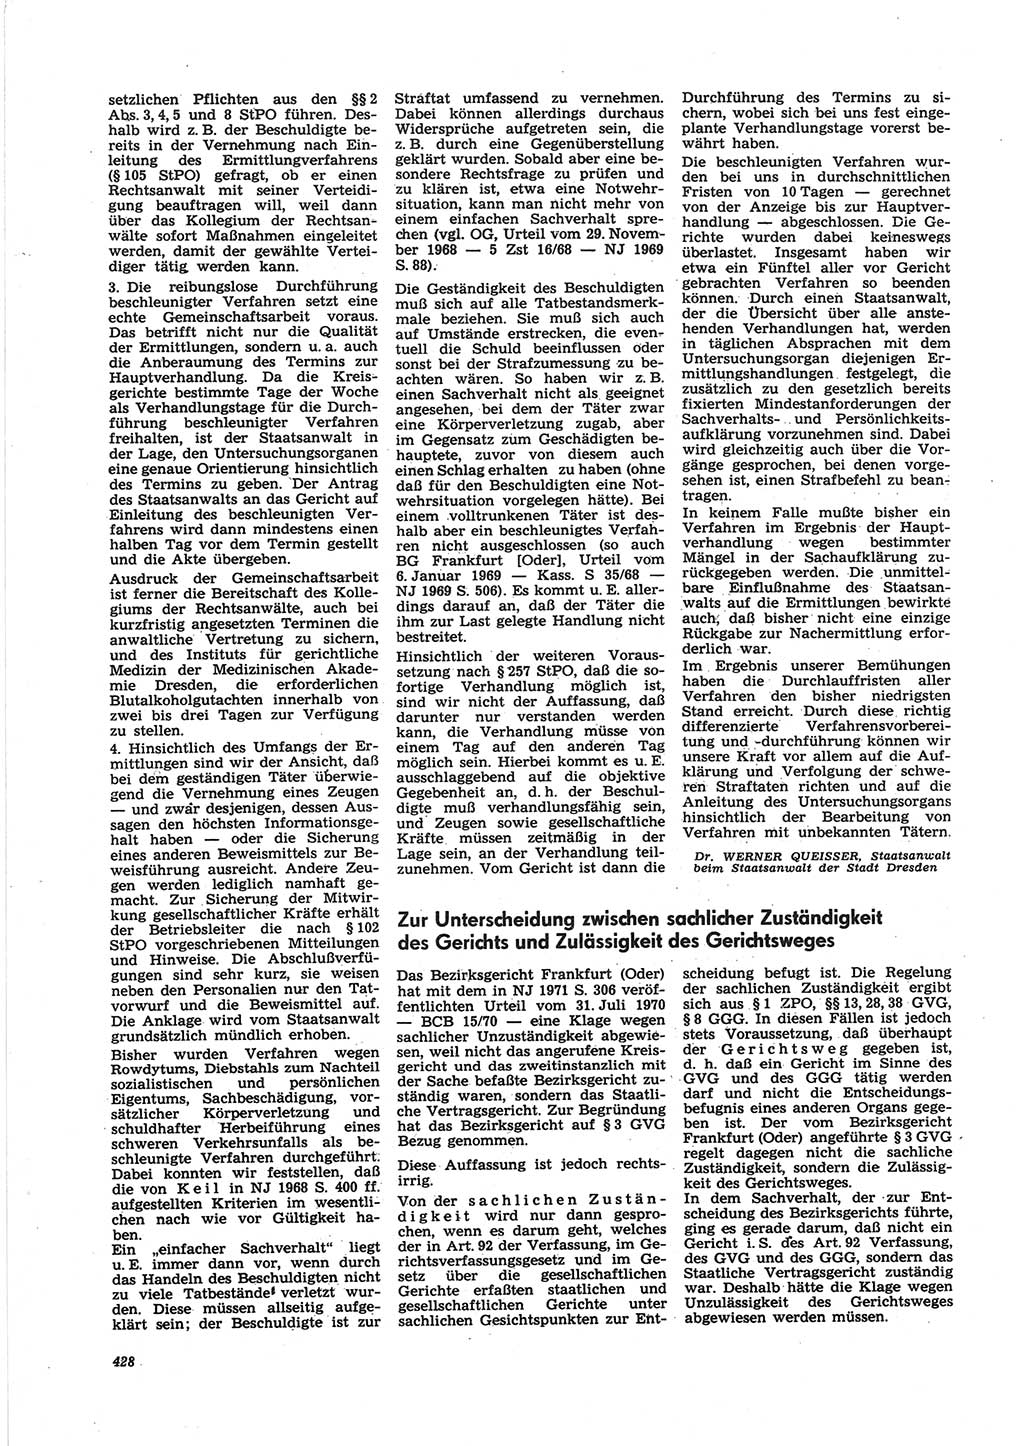 Neue Justiz (NJ), Zeitschrift für Recht und Rechtswissenschaft [Deutsche Demokratische Republik (DDR)], 25. Jahrgang 1971, Seite 428 (NJ DDR 1971, S. 428)